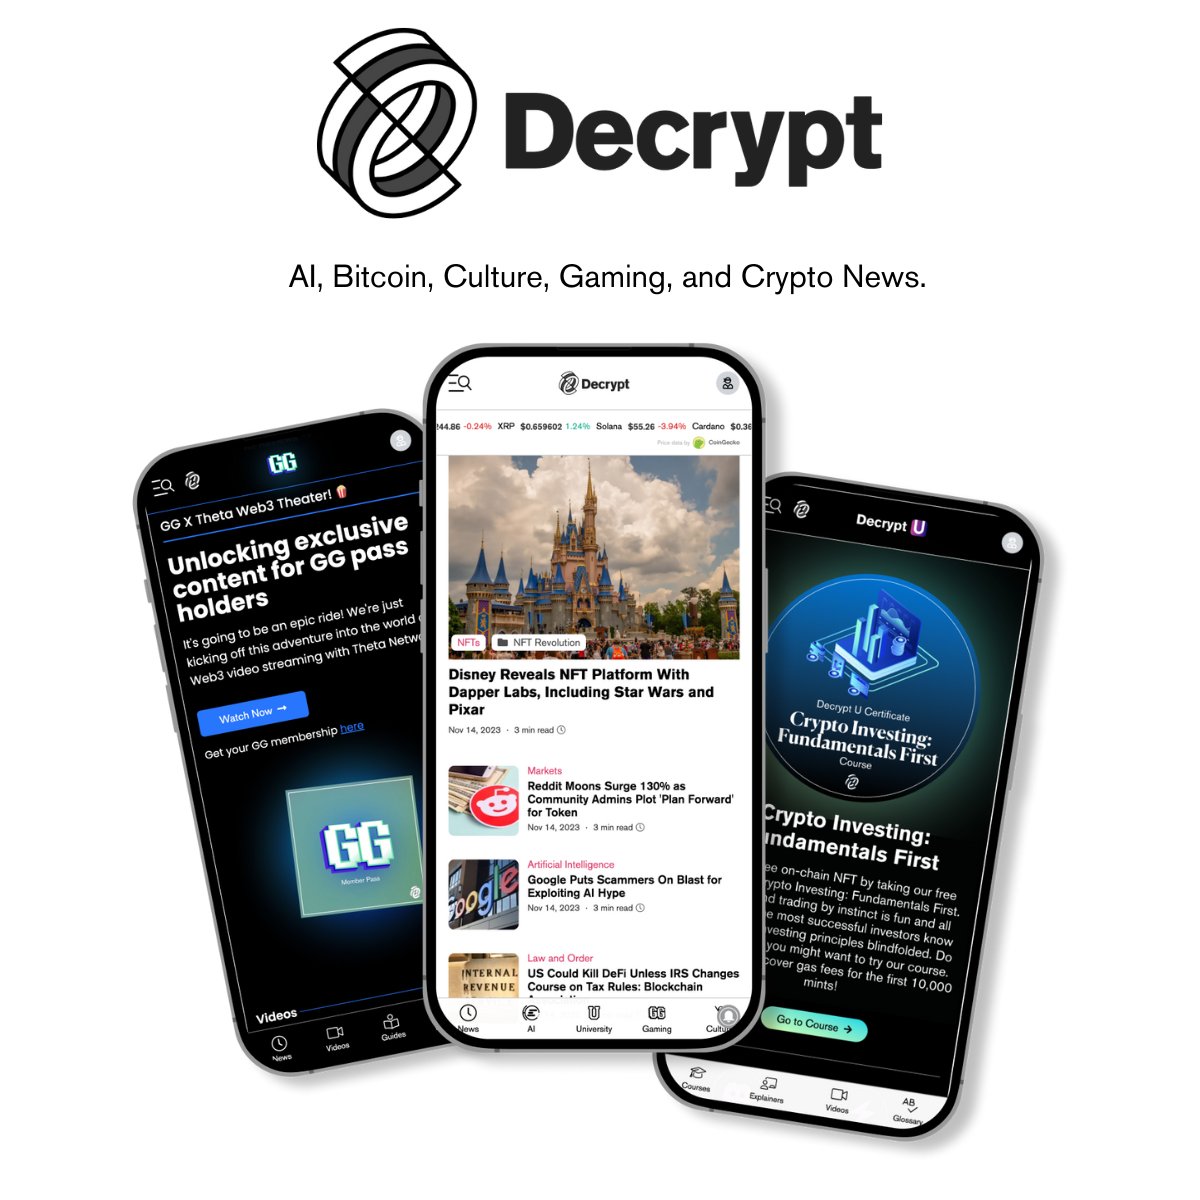 Decrypt: AI, Bitcoin, Culture, Gaming, and Crypto News - Decrypt